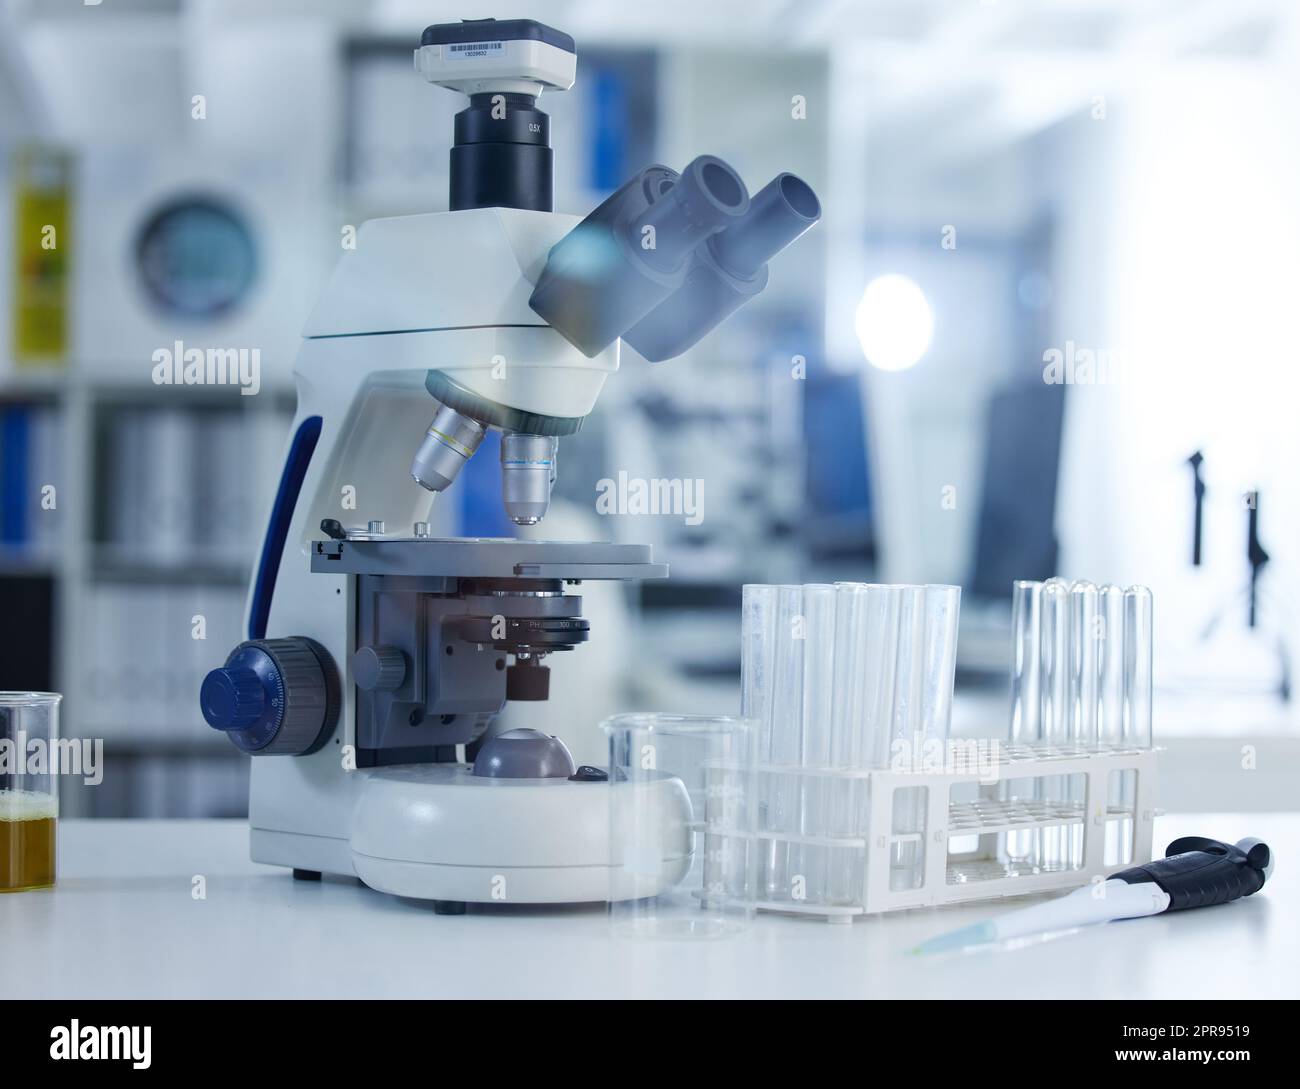 La recherche facilitée par la technologie. Un microscope et des lunettes sur une table dans un laboratoire. Banque D'Images